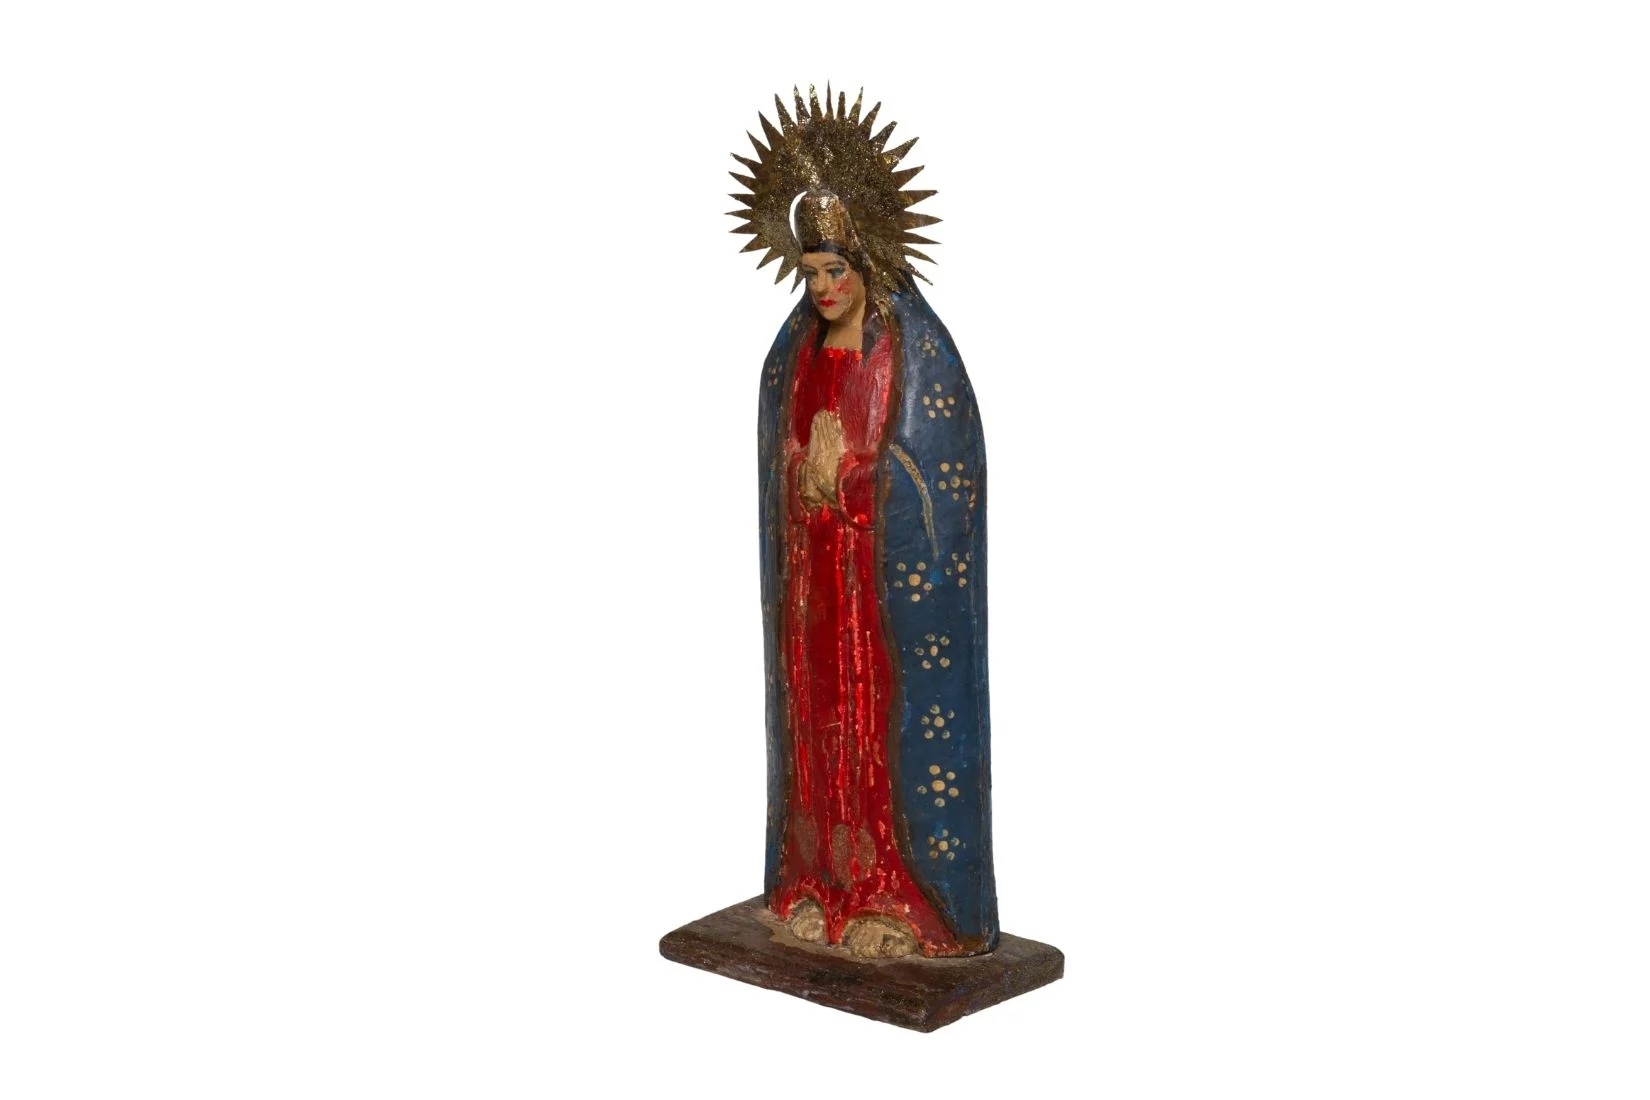 Virgen de madera tallada, policromada con esmalte, diamantina y ensamble de metal. Artesano y procedencia desconocidos. Col. Marie Thérèse Hermand de Arango. (Foto: EKV).